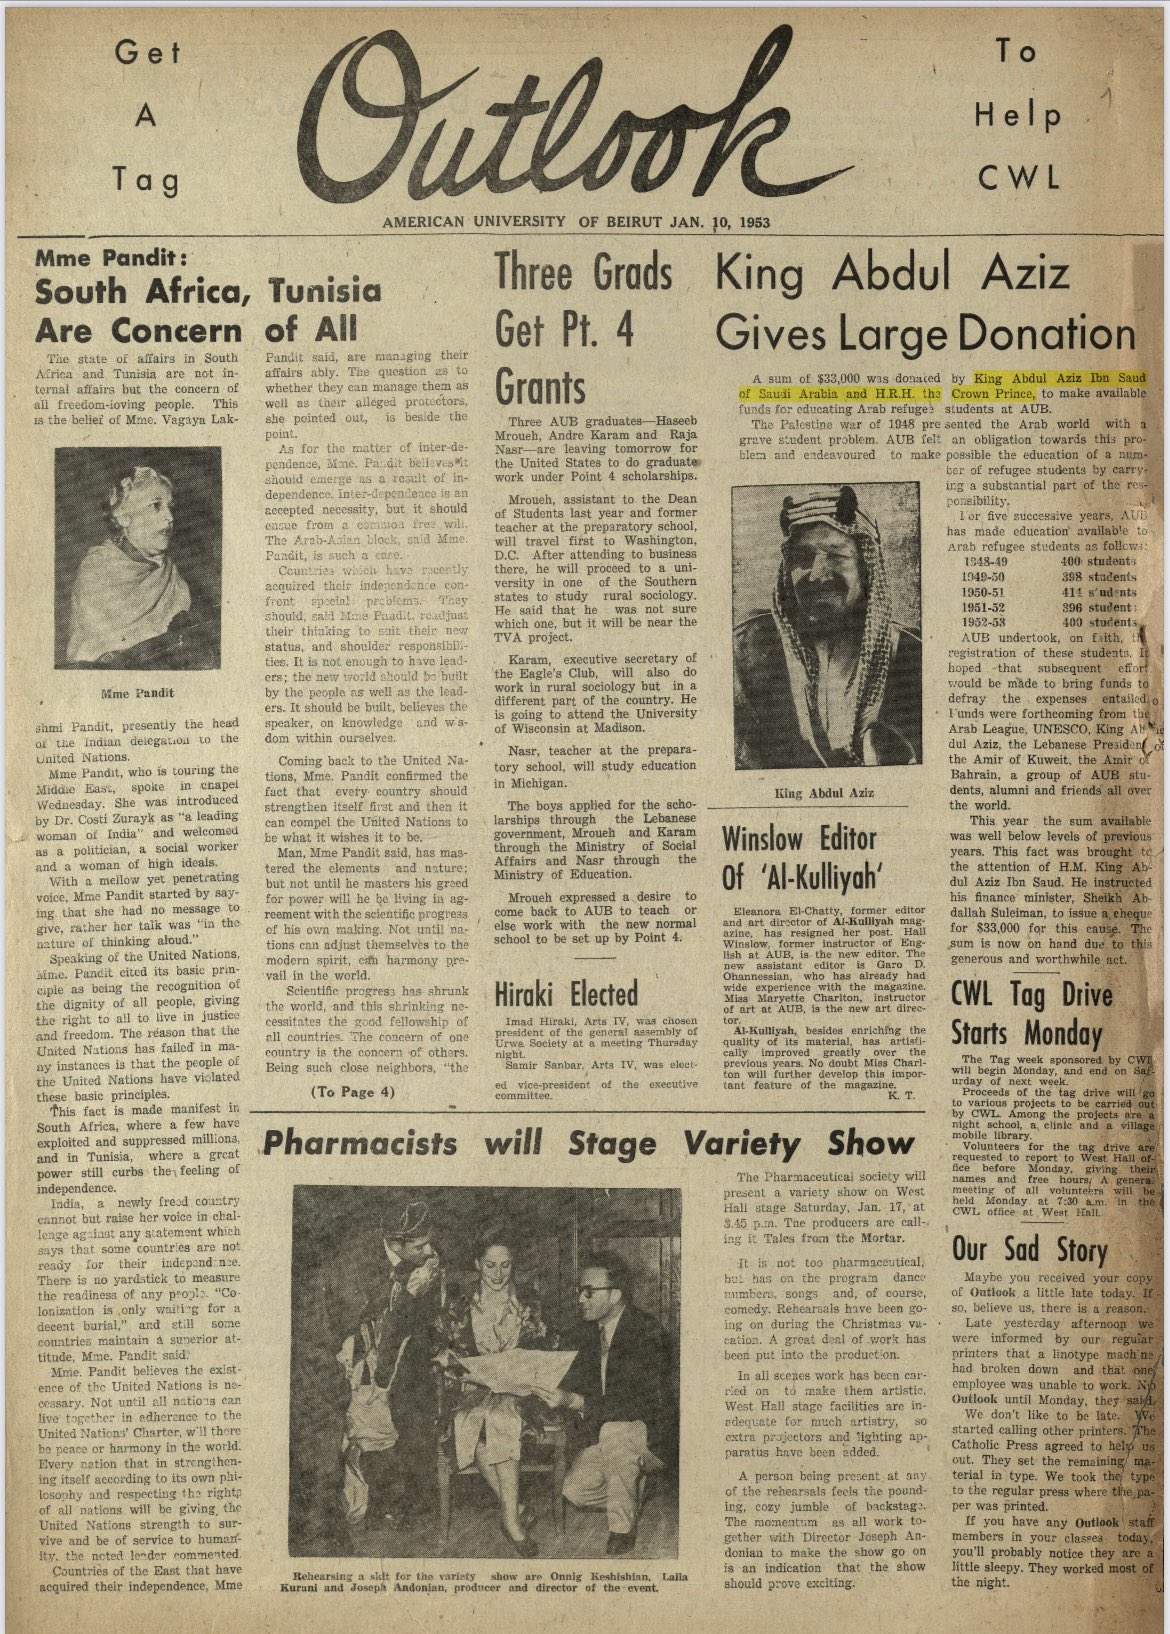 ارشيف الجامة الامريكية في بيروت 11 ابريل 1953 زيارة الملك سعود للبنان وتبرع.jpg